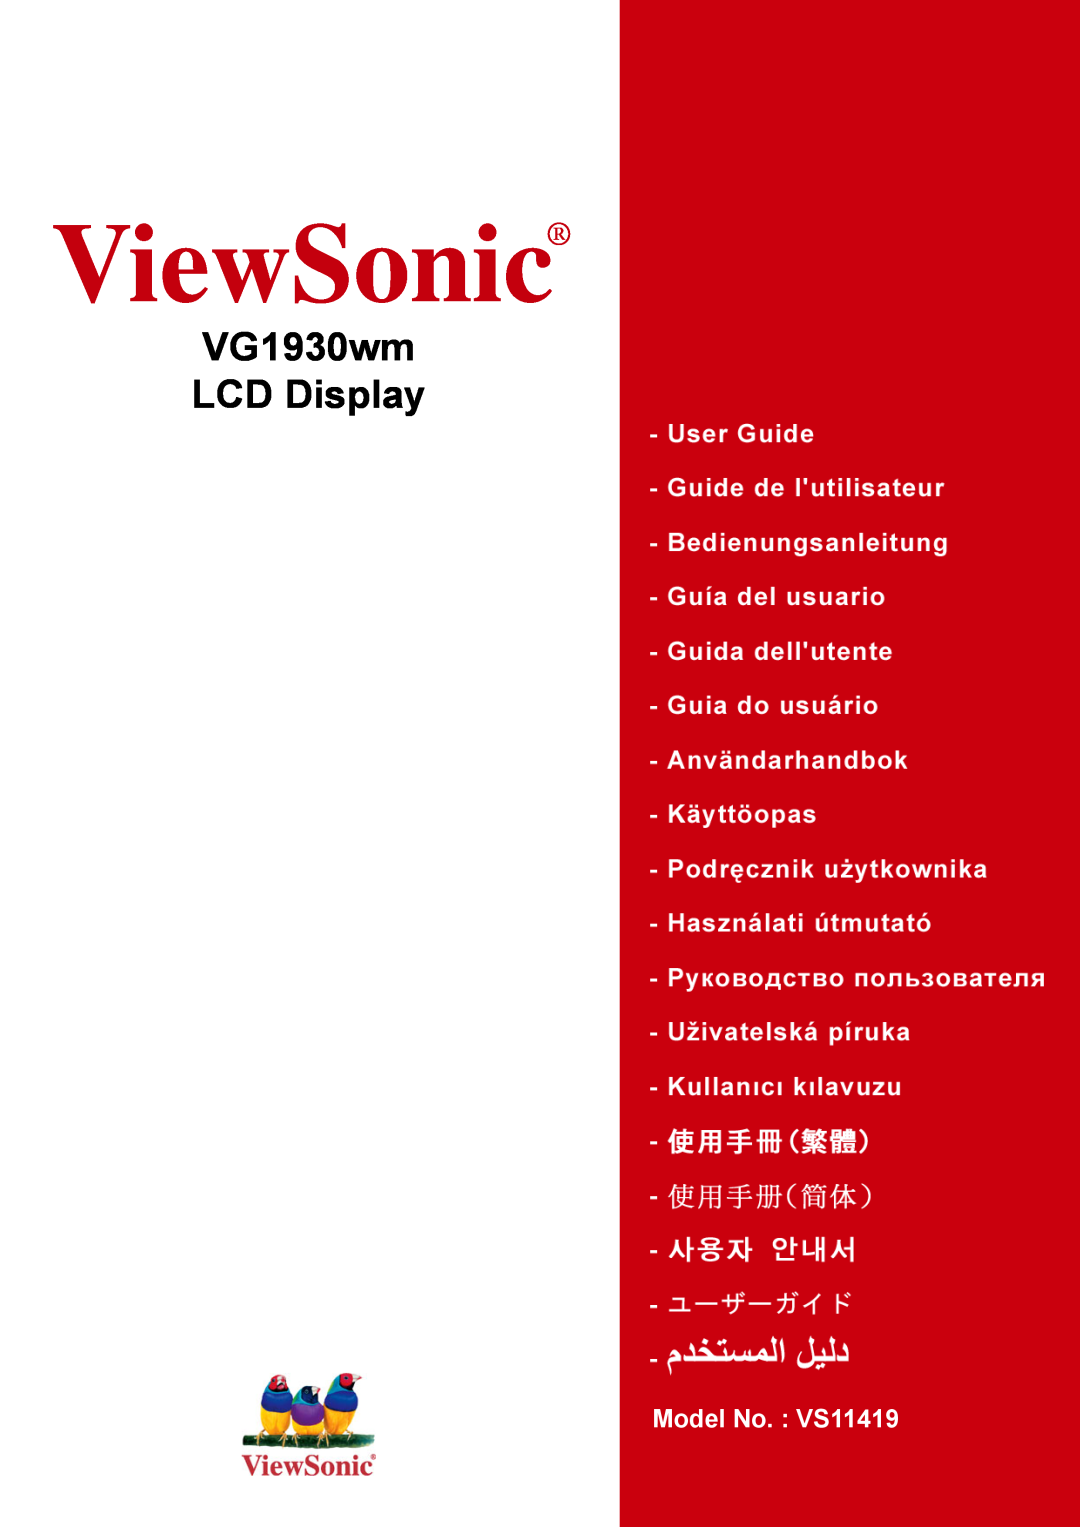 ViewSonic manual ViewSonic, VG1930wm LCD Display, Model No. : VS11354 